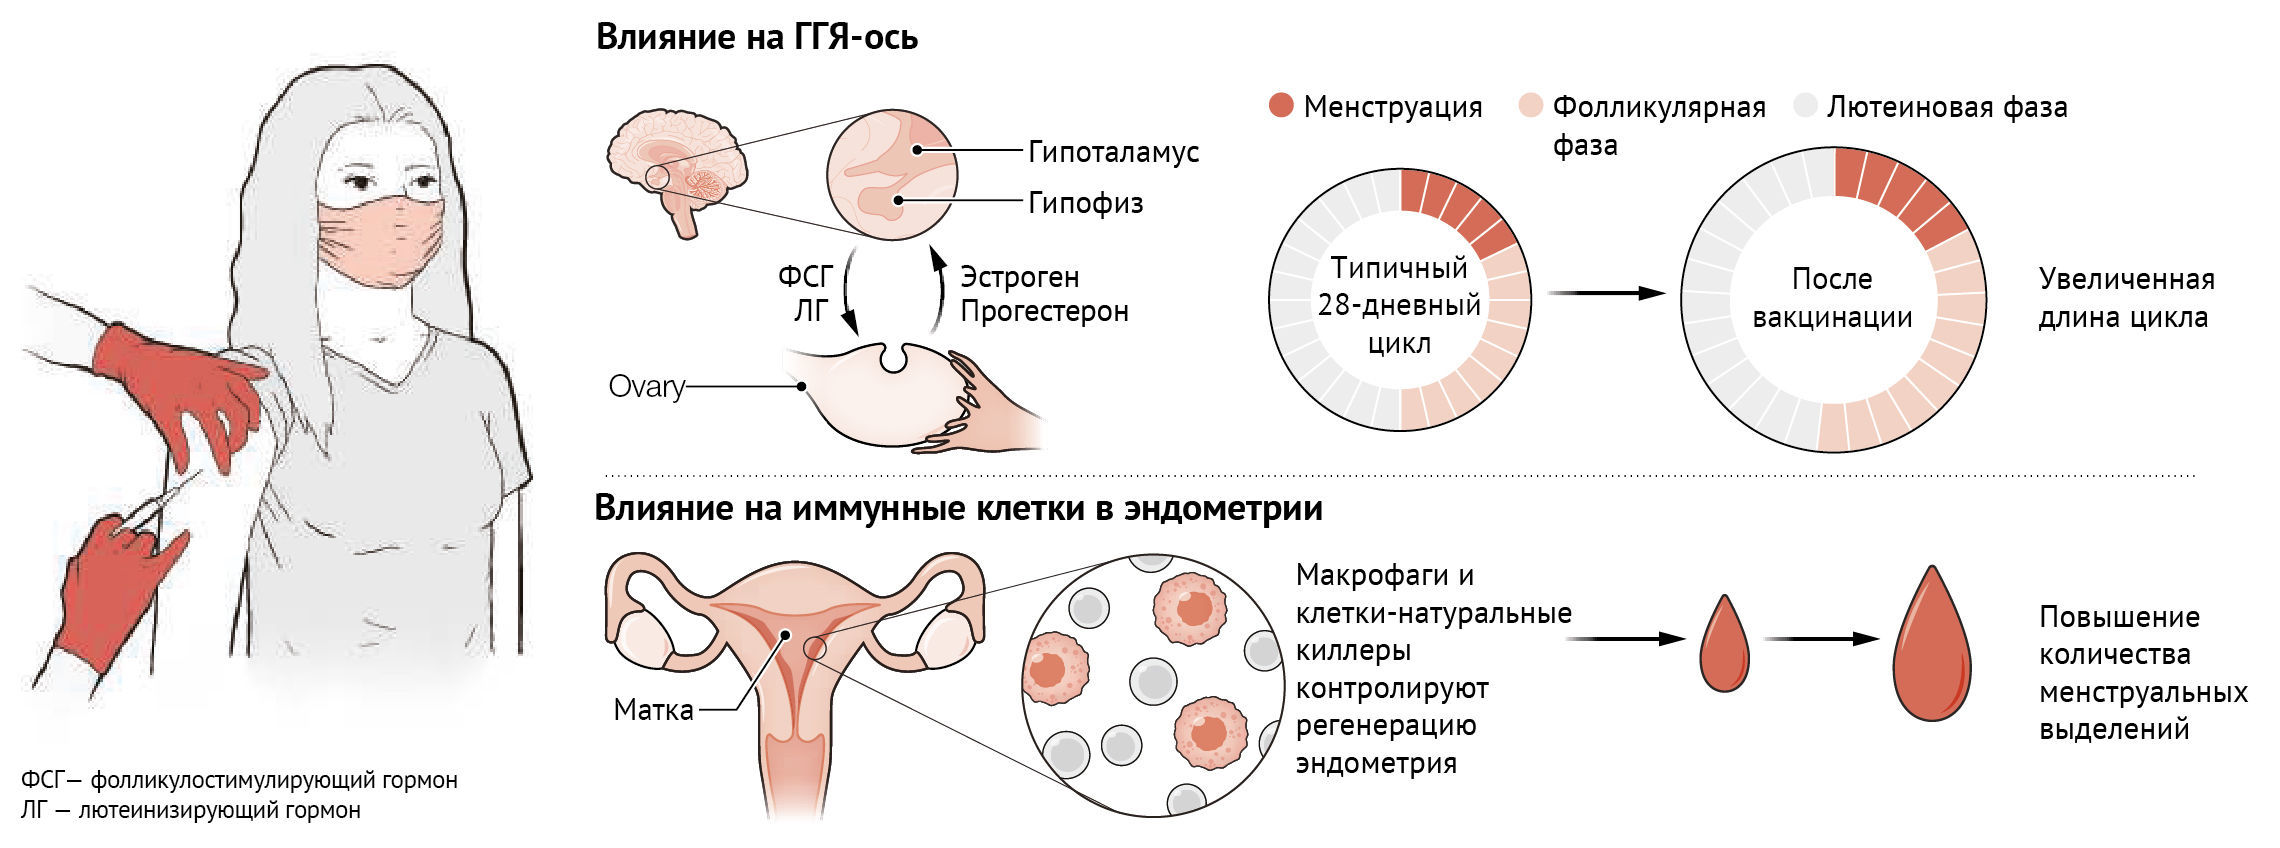 как сперма влияет на женское здоровье фото 48